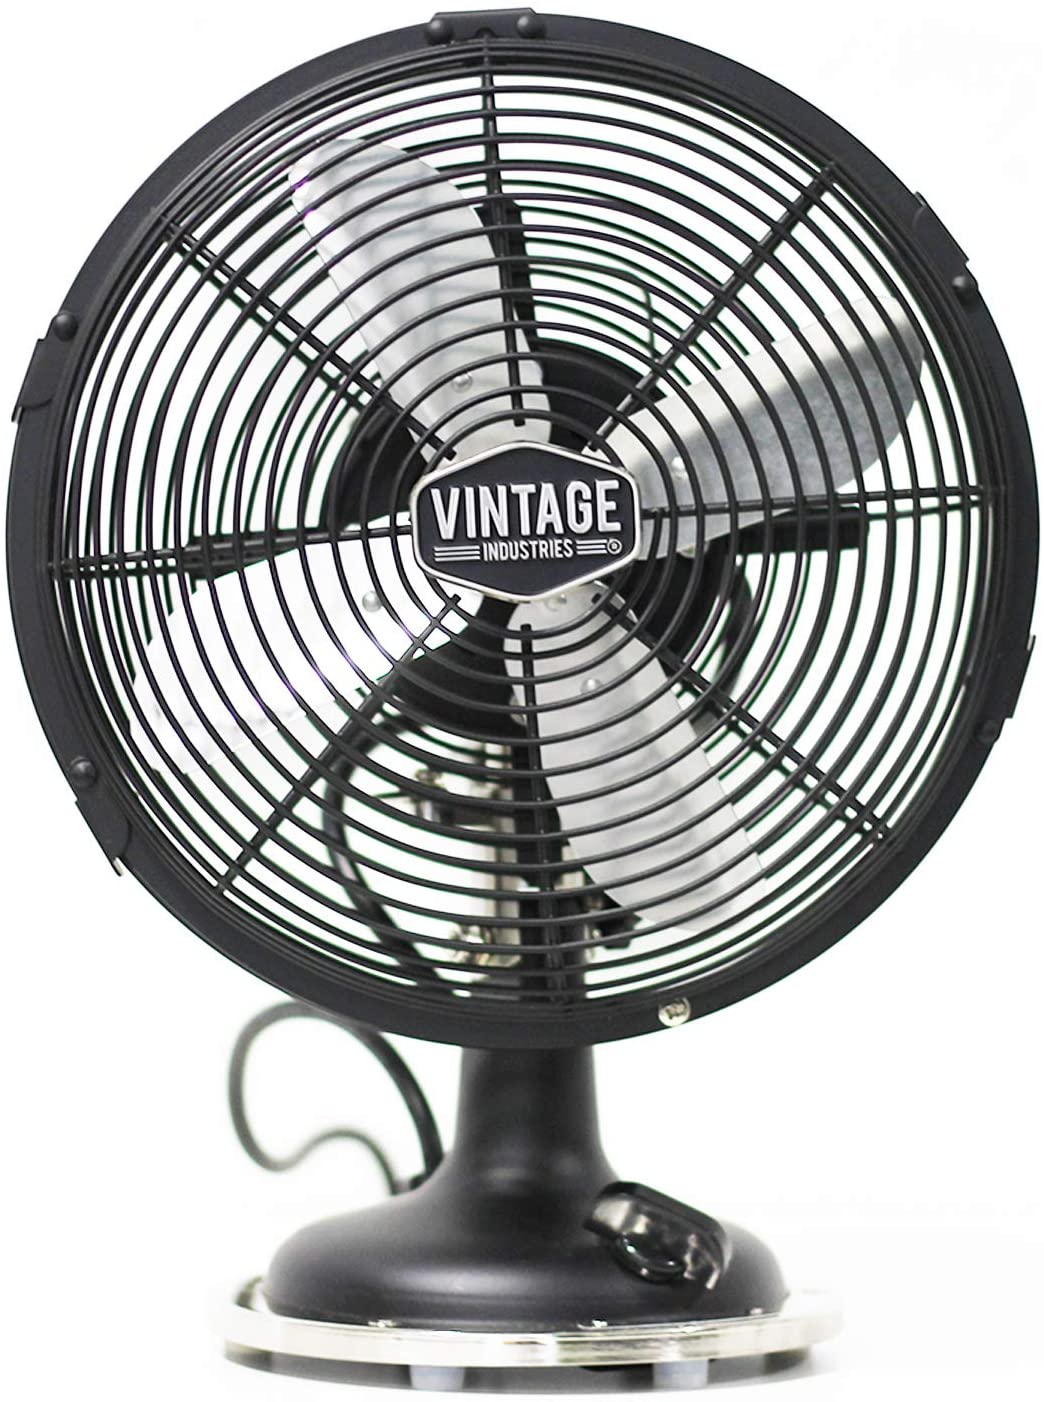 Vintage-Indistries-Ventilator-Frontal